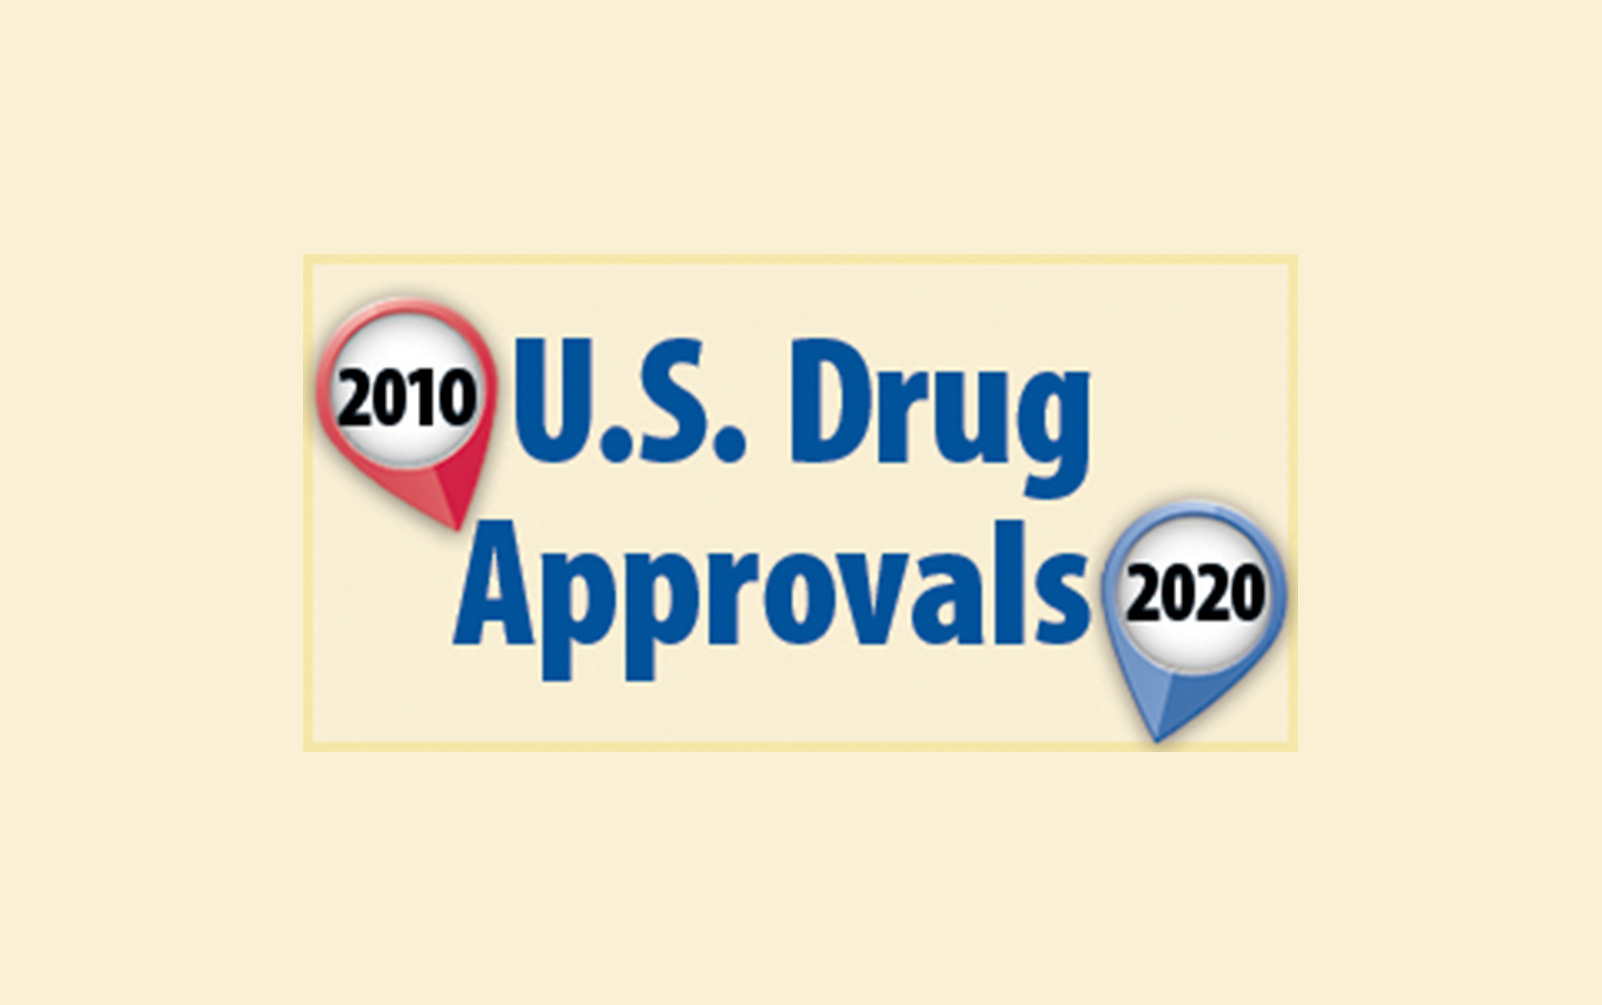 U.S. Drug Approvals: 2010 - 2020